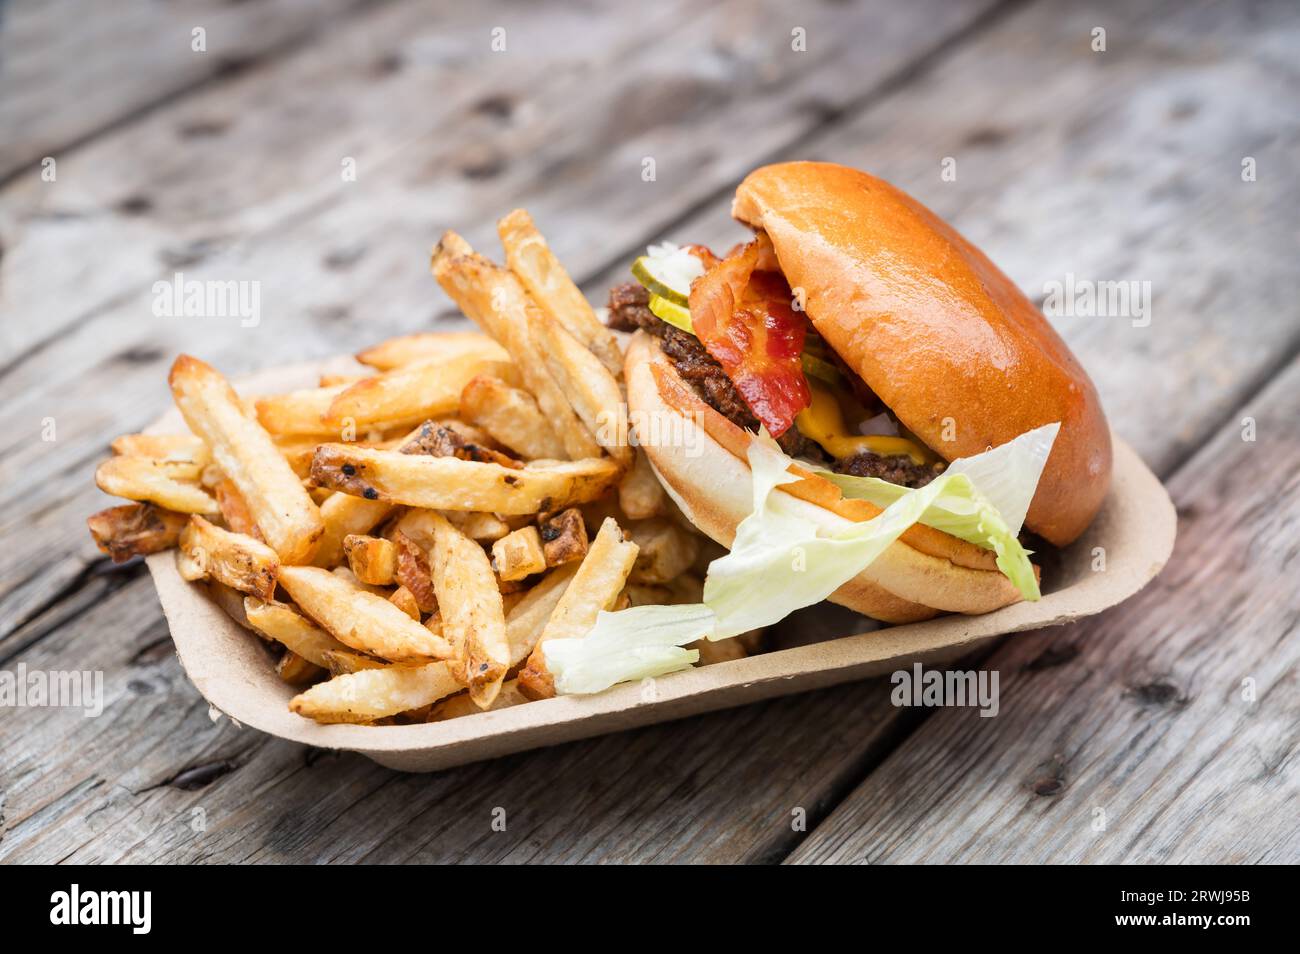 Ein Burger mit Speck zum Mitnehmen und frischen Pommes frites. Wird in einem kompostierbaren Papierfach serviert. Stockfoto